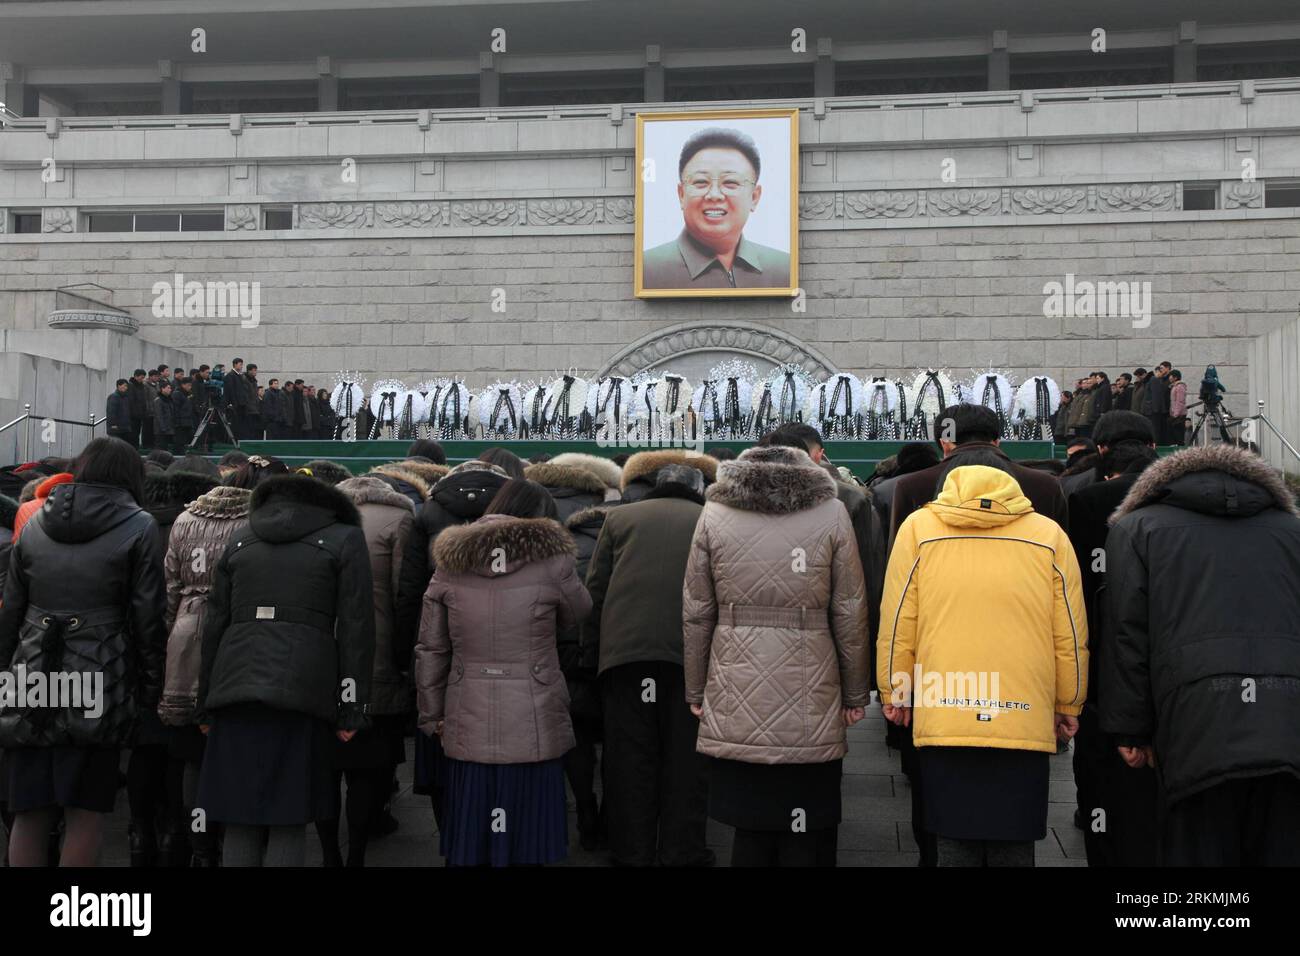 (111221) -- PYONGYANG, 21 dicembre 2011 (Xinhua) -- la gente piange la morte di Kim Jong il, leader della Repubblica Popolare Democratica di Corea (RPDC), davanti al ritratto di Kim Jong il a Pyongyang, RPDC, 21 dicembre 2011. (Xinhua/Zhang li) (wn) RPDC-KIM JONG il-MORTE-CONDOGLIANZE PUBLICATIONxNOTxINxCHN 111221 Pyongyang DEC 21 2011 celebrità di XINHUA Morne la morte di Kim Jong il Top leader della Repubblica democratica di Corea RPDC davanti al Ritratto di Kim Jong il a Pyongyang RPDC DEC 21 2011 XINHUA Zhang WE sinistro RPDC Kim Jong il condanne a morte PUBLICATIONxNOTxINx Foto Stock